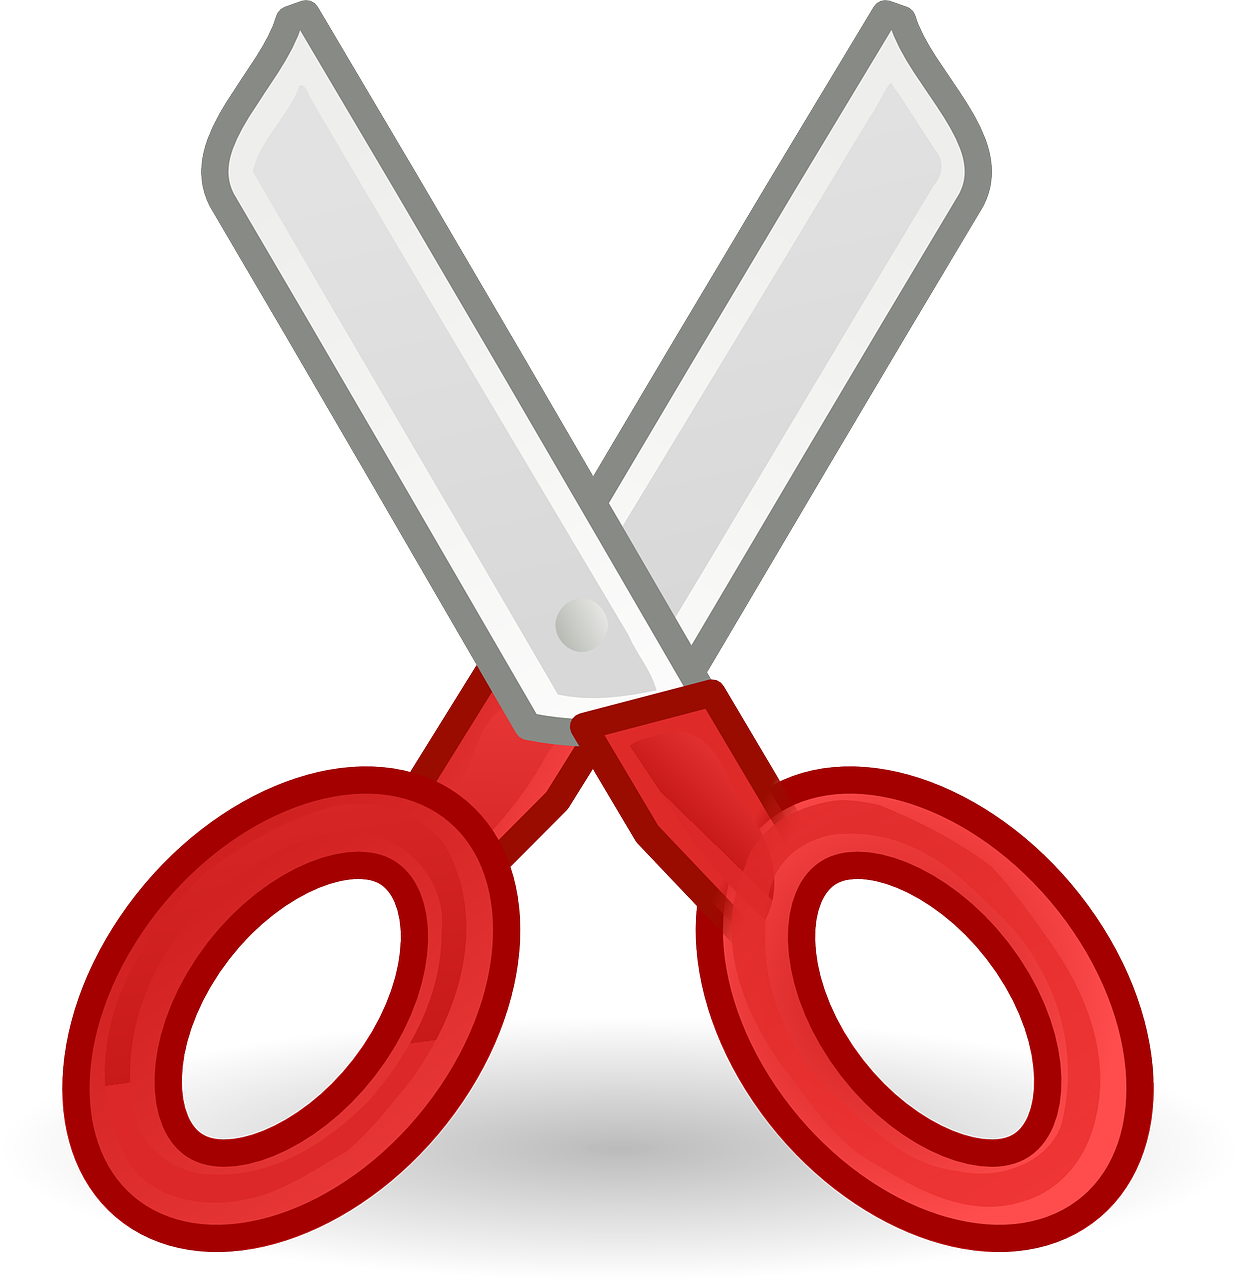 Scissors free scissor and com